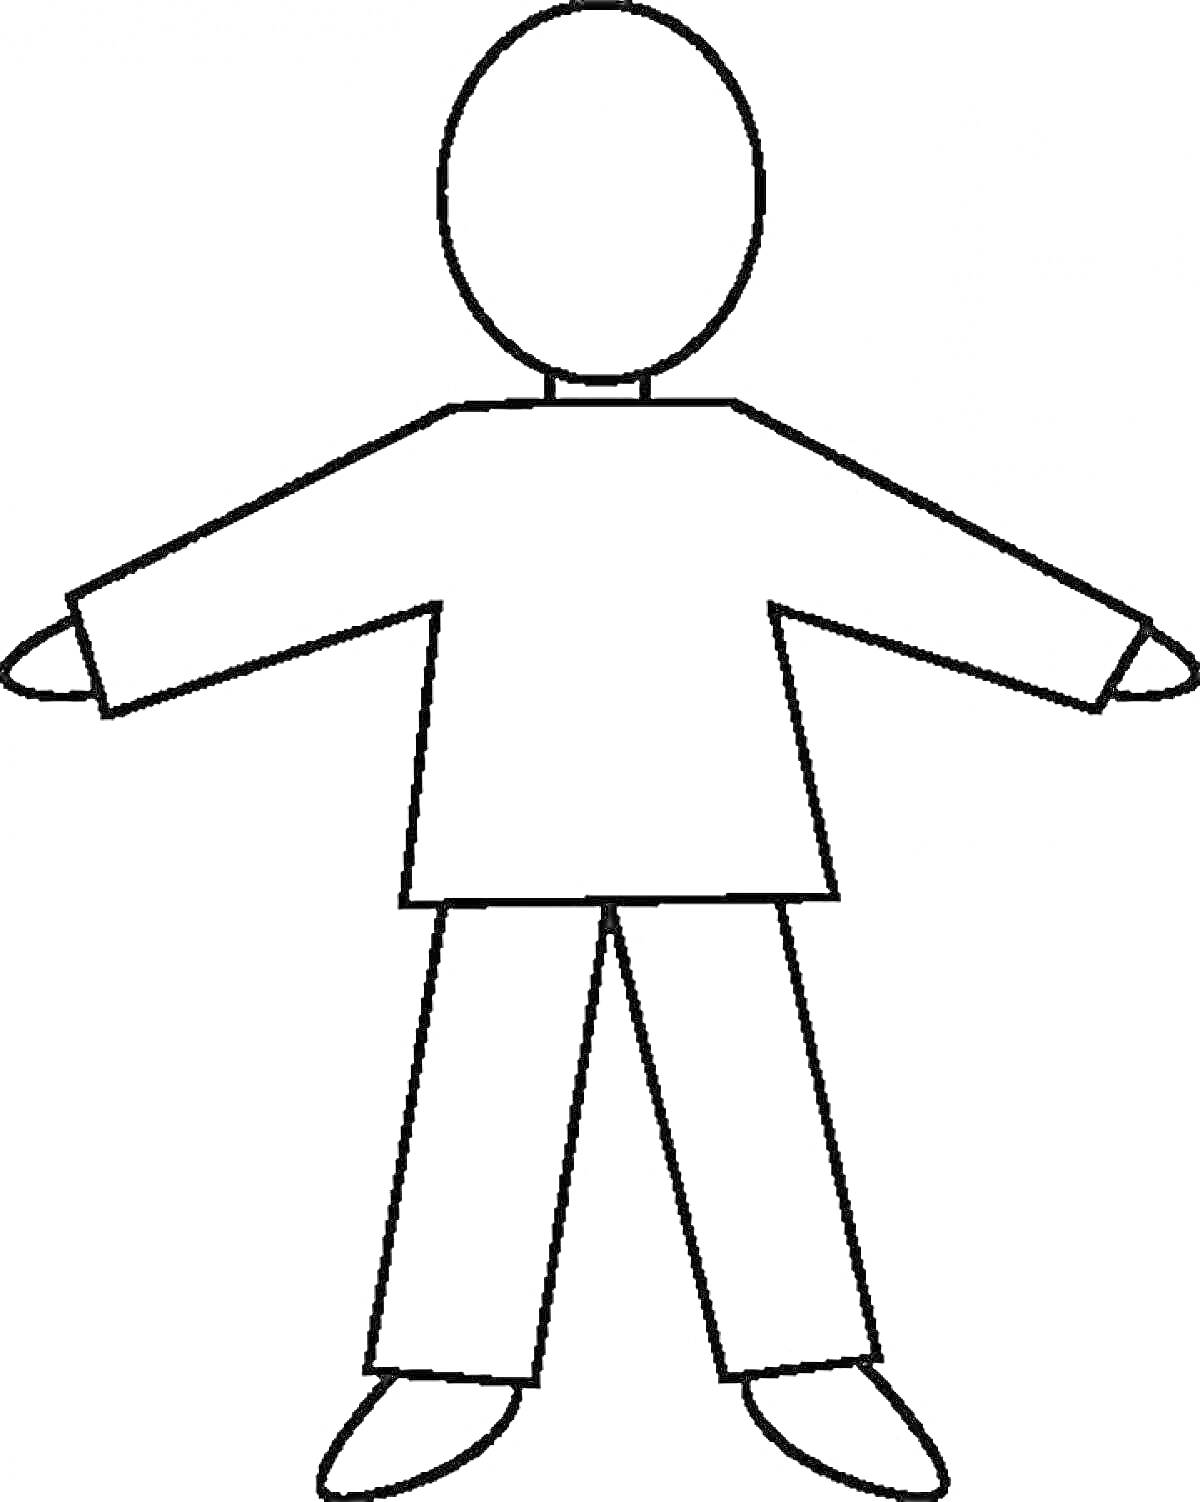 Контур человека в одежде (свитер, брюки, обувь)